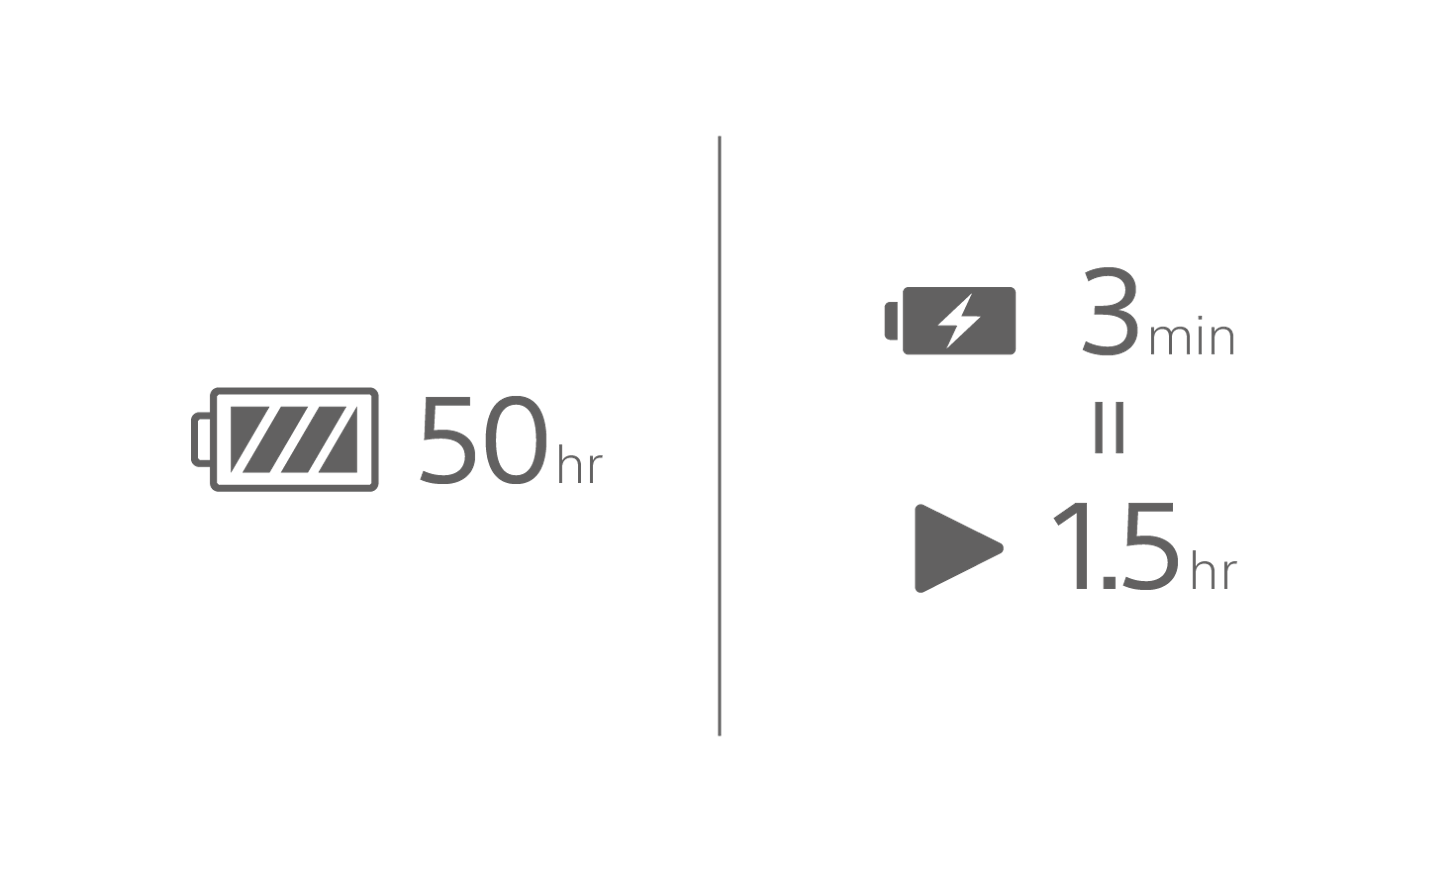 תמונה של סמל סוללה עם טקסט של 50 שעות, סמל סוללה נטענת עם טקסט של 3 דקות מעל סמל הפעלה עם טקסט של 1.5 שעות